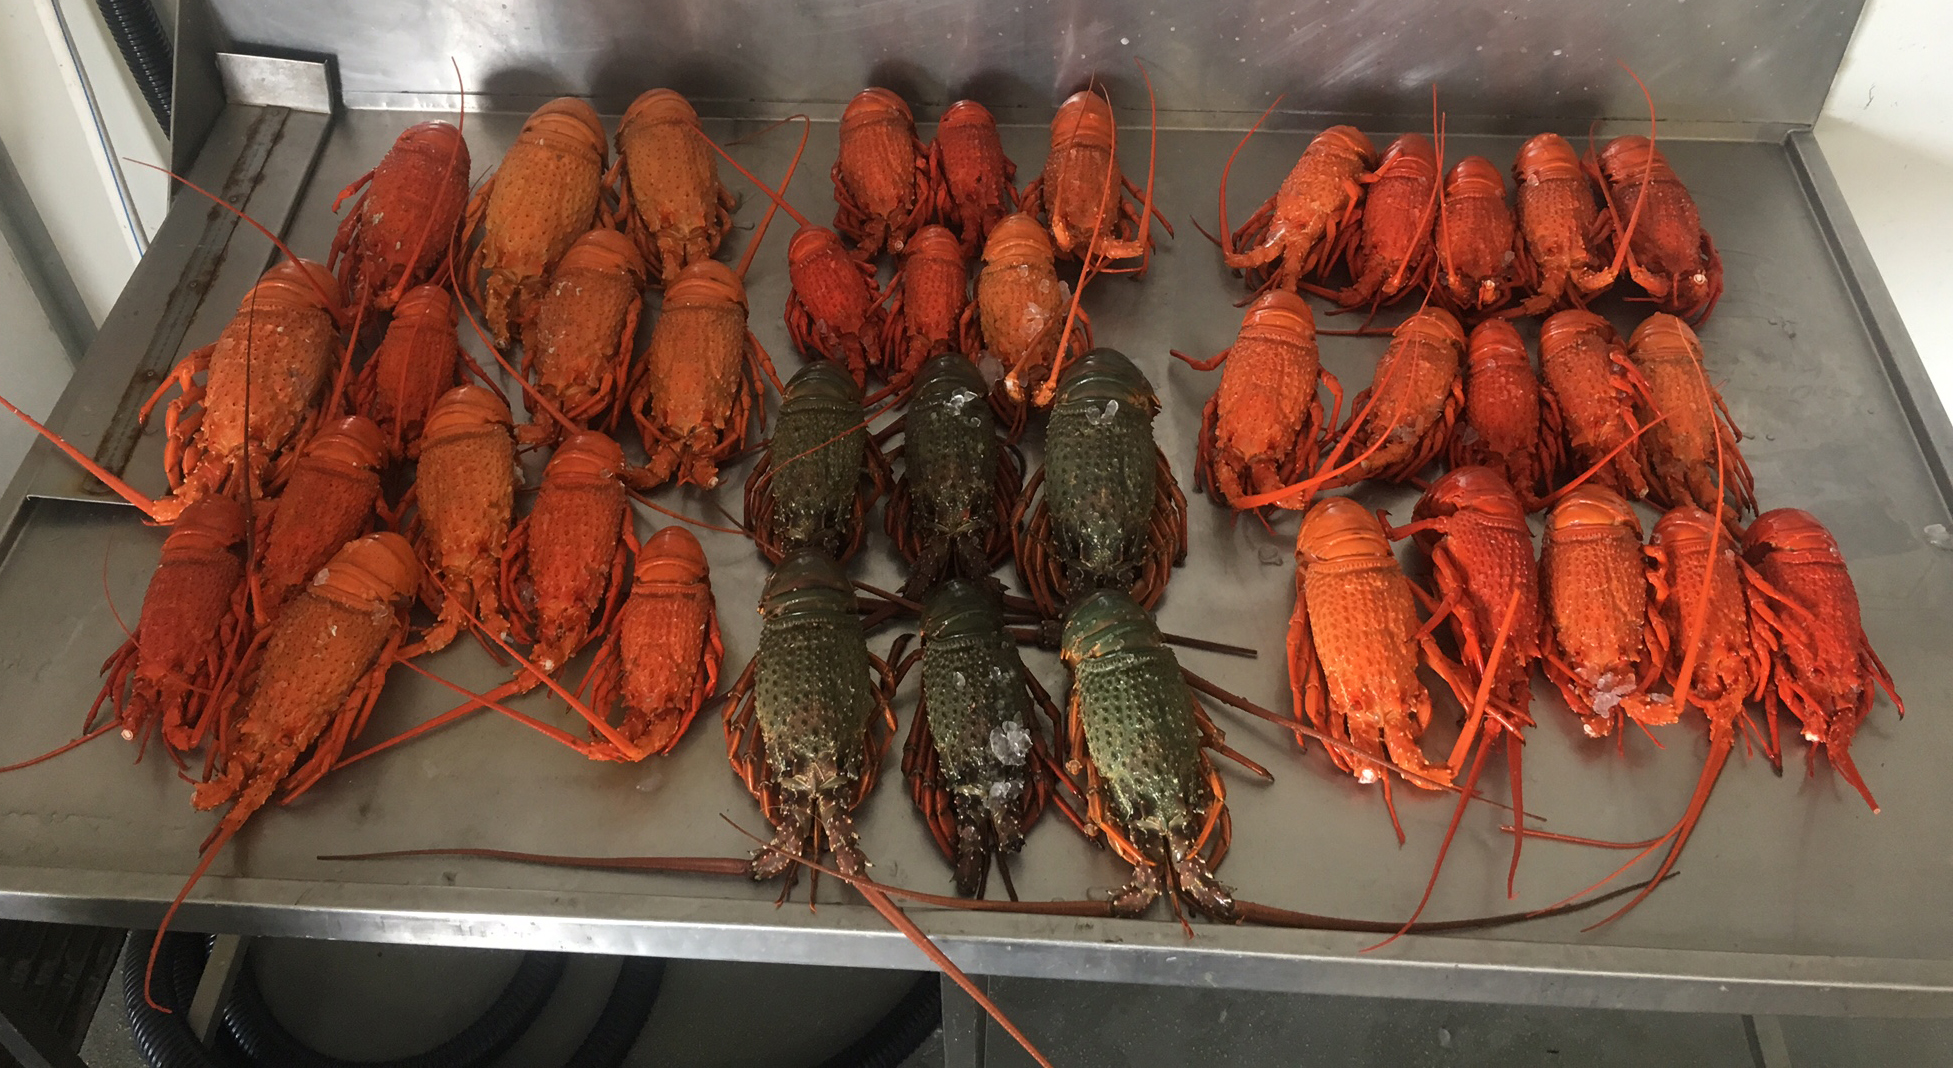 Eastern Rock Lobsters seized in Newcastle, NSW